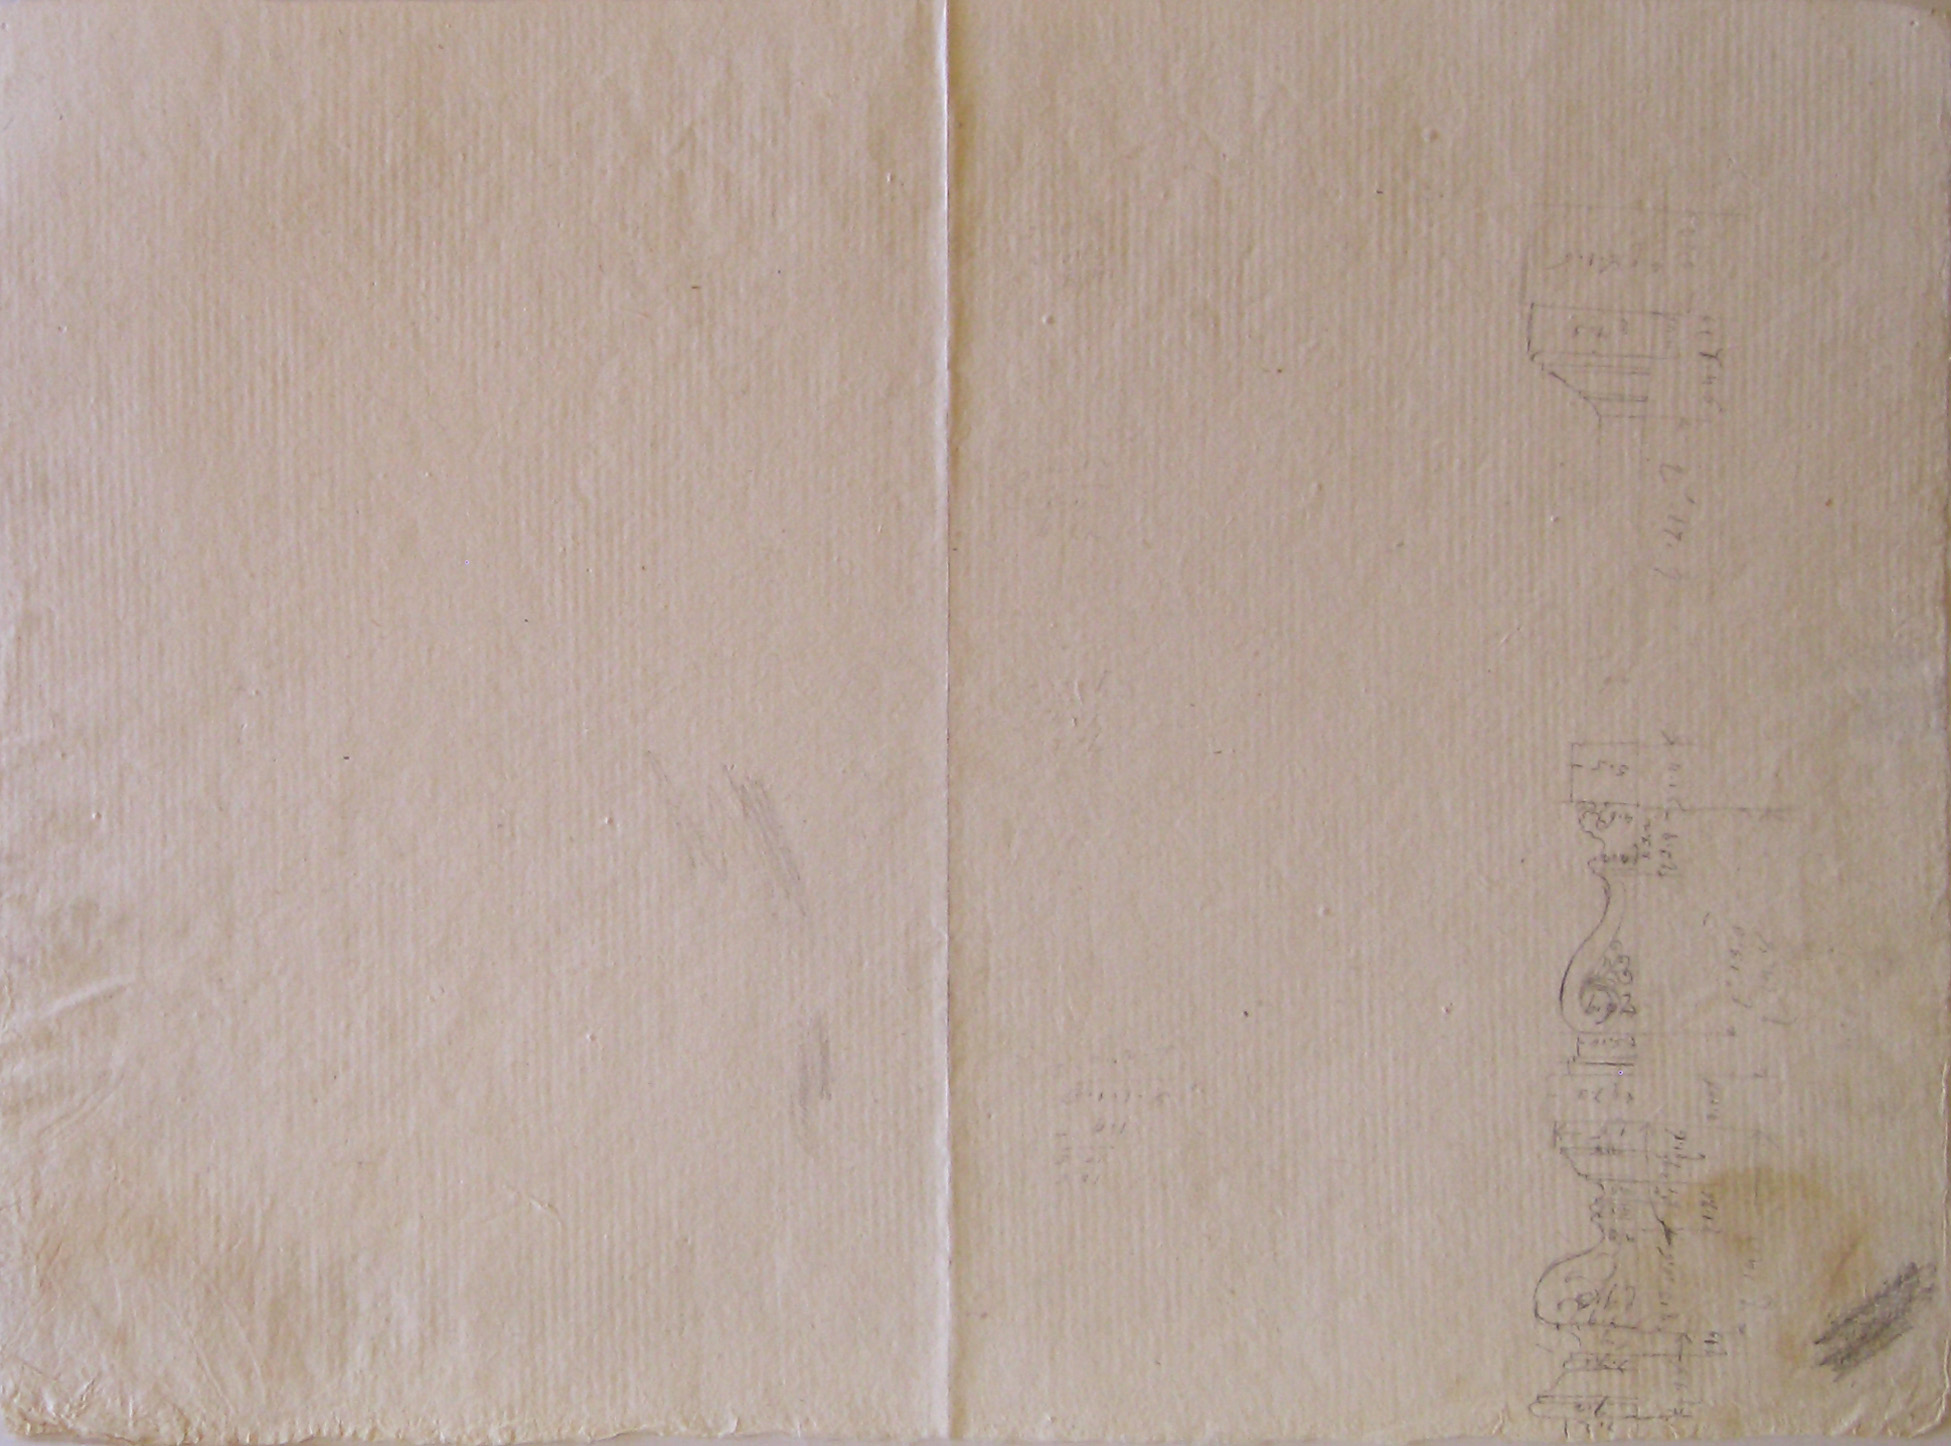 Progetto architettonico: dettaglio di cornici (disegno architettonico, opera isolata) di Cagnola Luigi (attribuito) (sec. XIX)